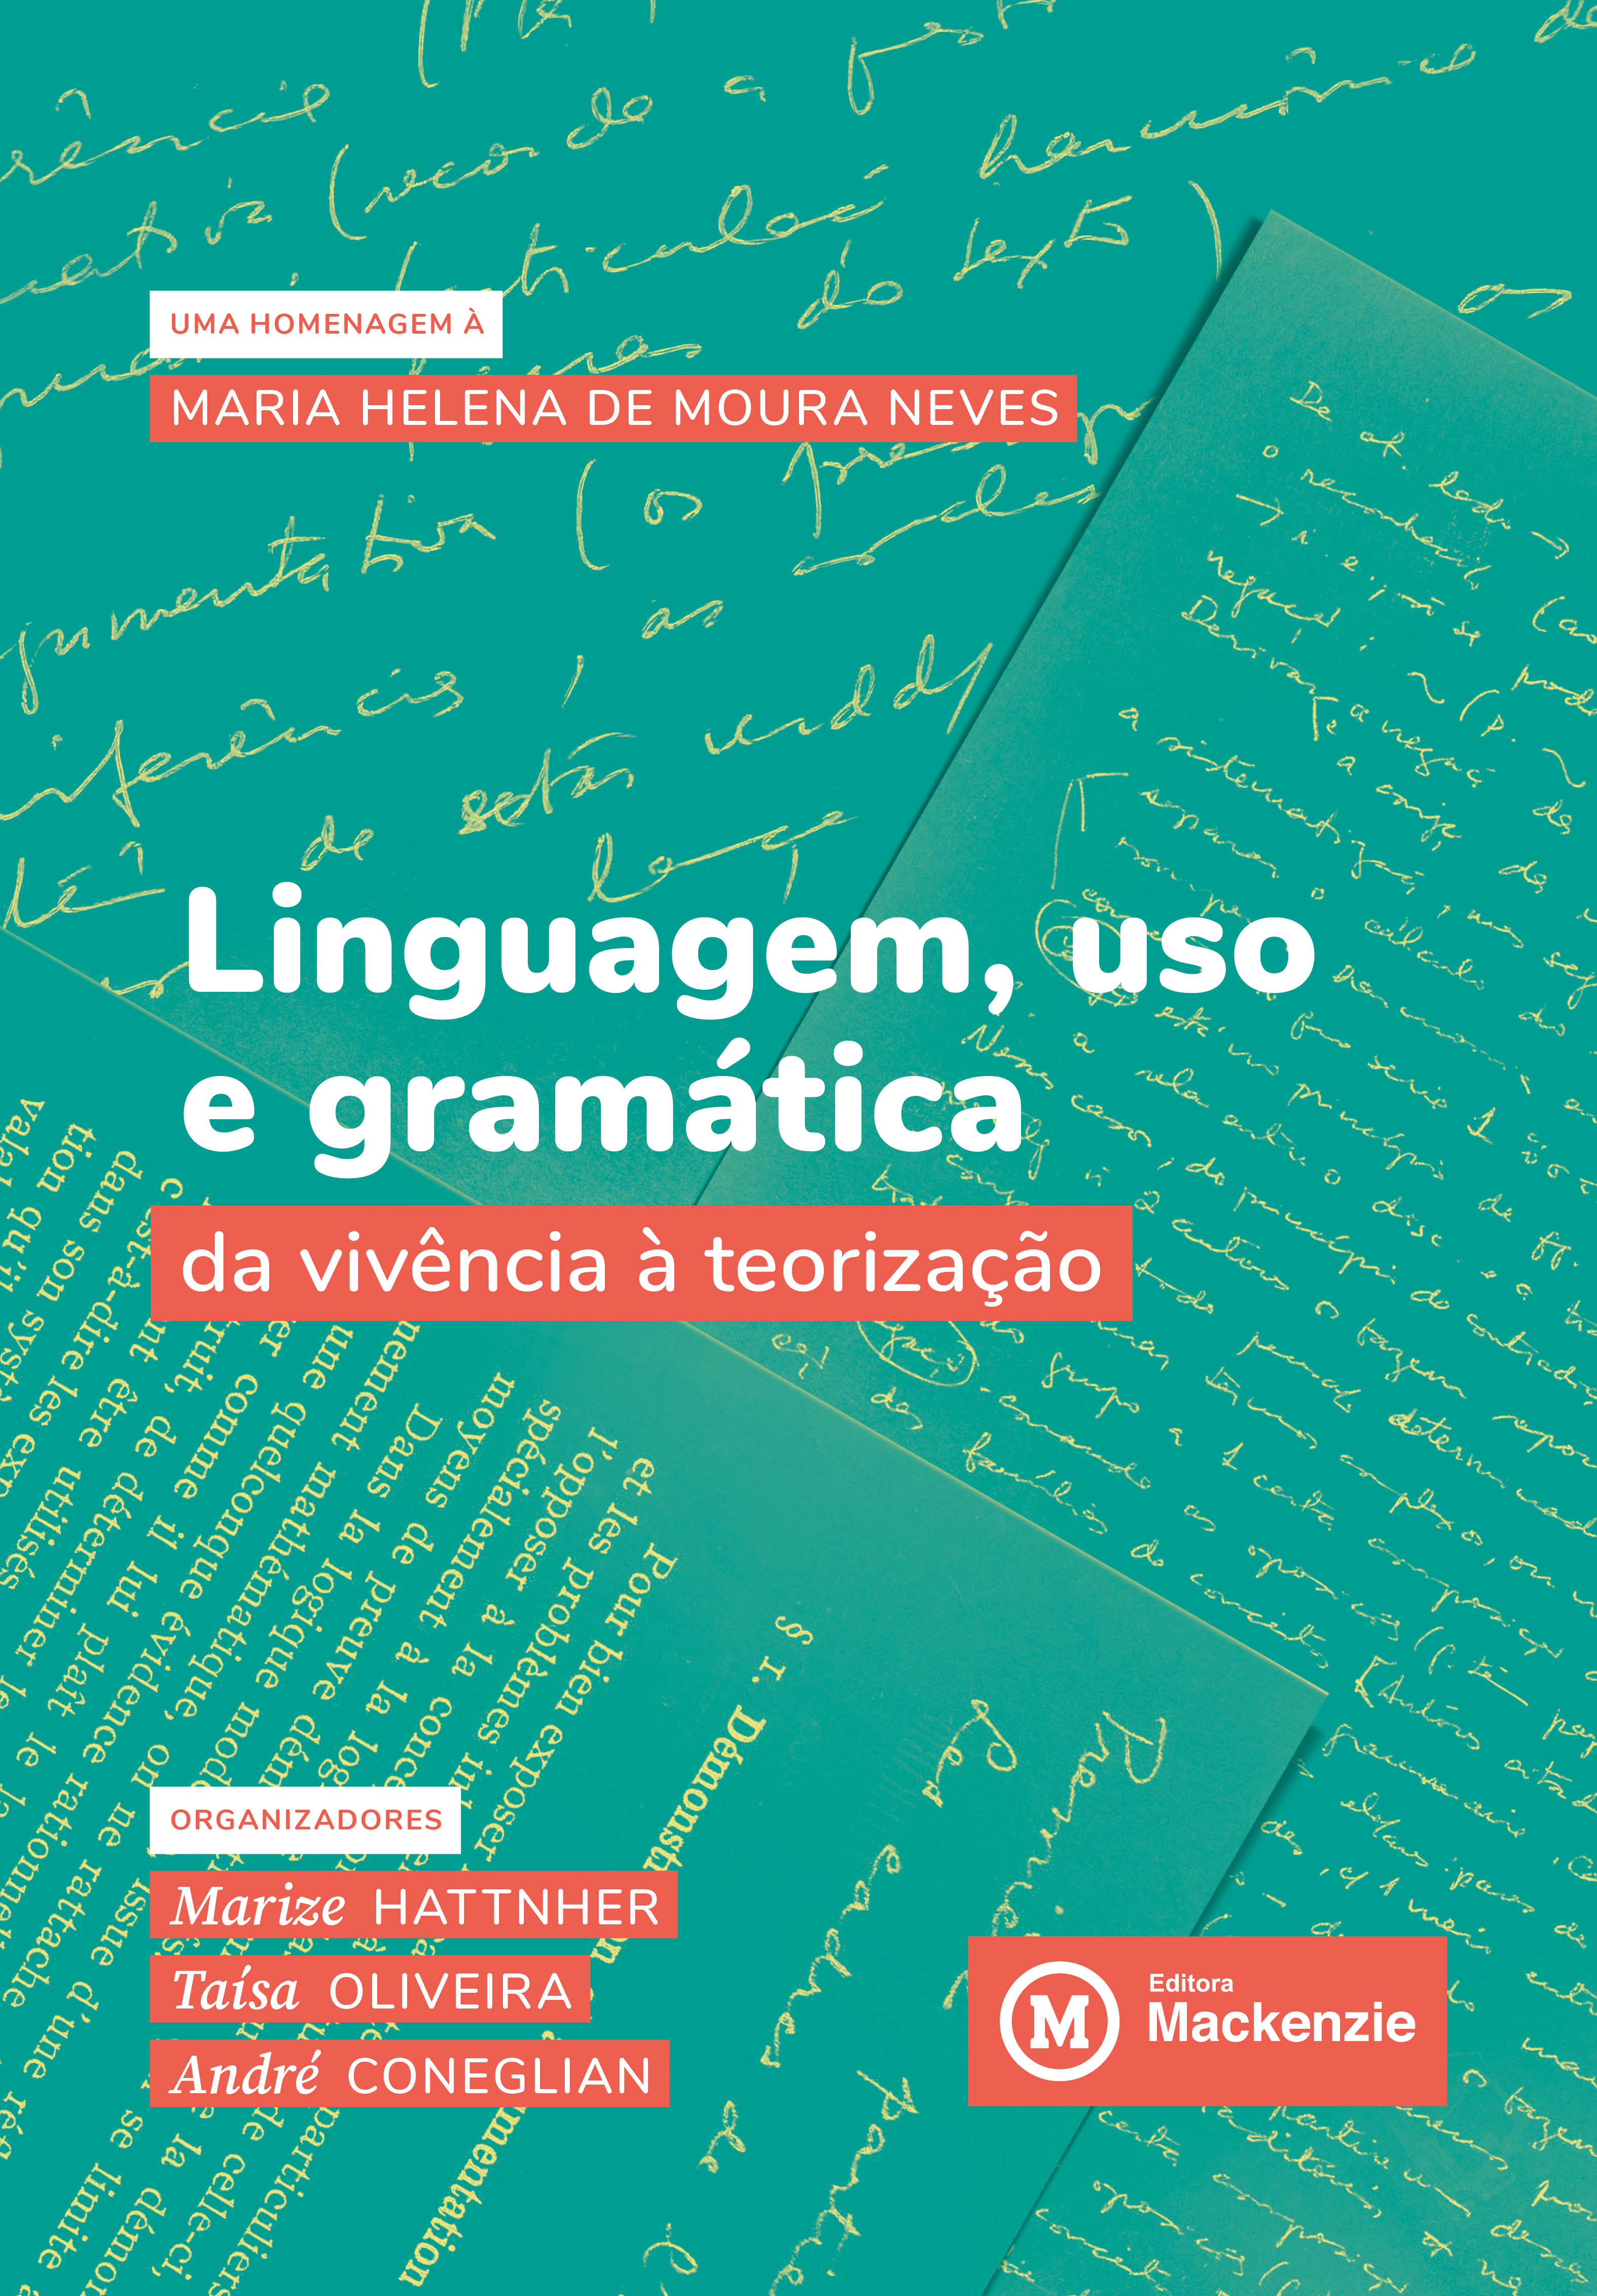 Gramatica - Acentuação e Ortografia, PDF, Estresse (Linguística)